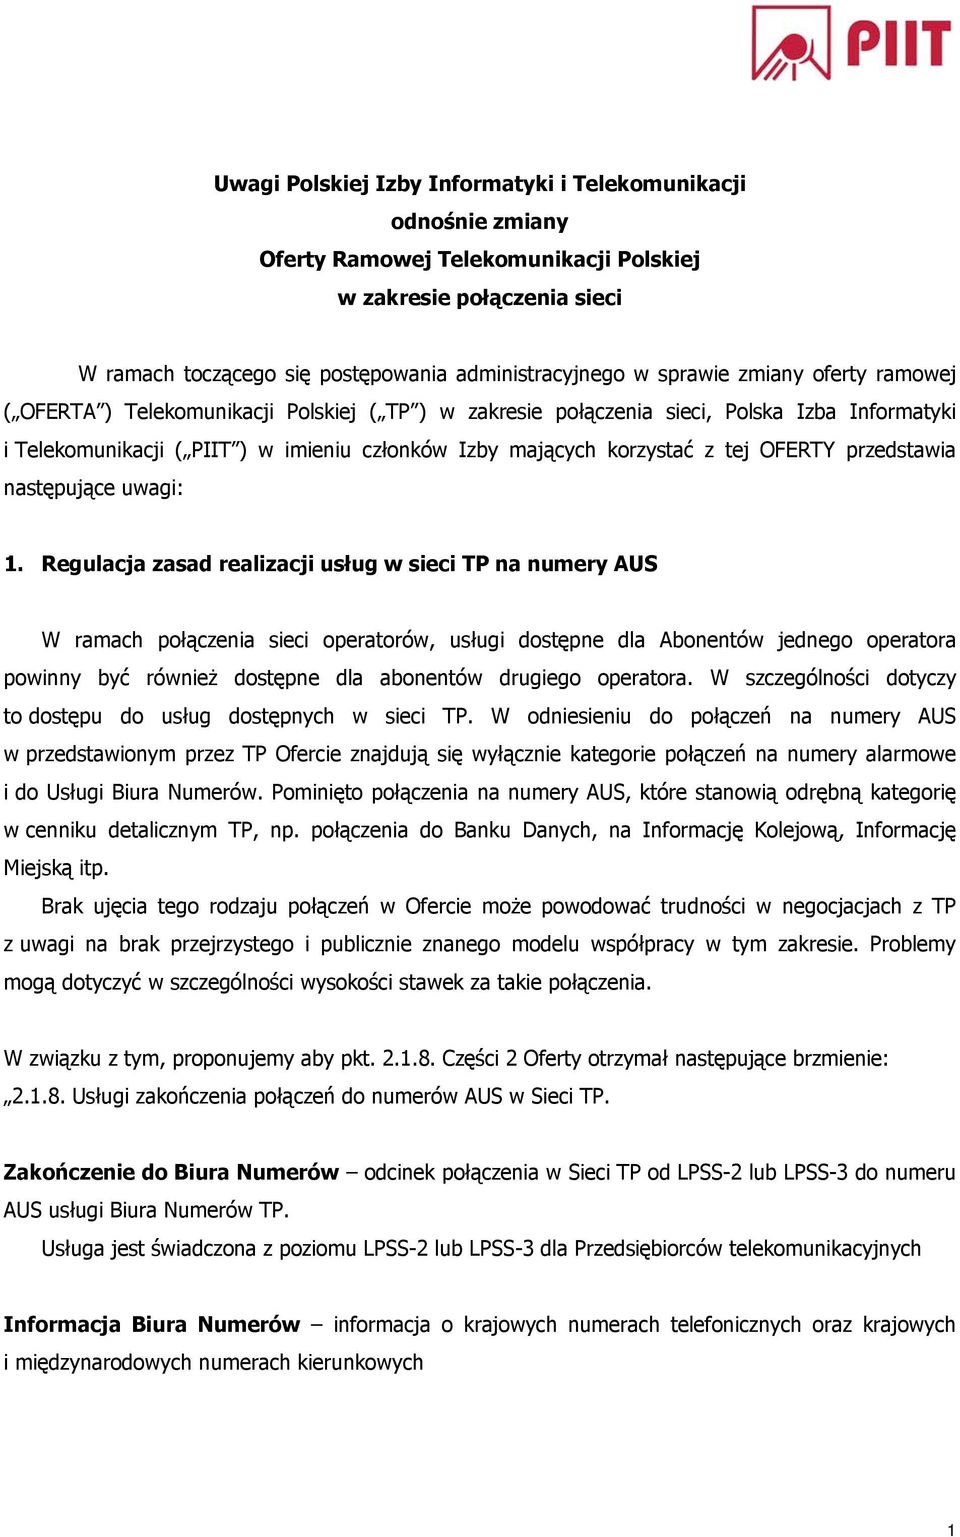 Uwagi Polskiej Izby Informatyki i Telekomunikacji odnośnie zmiany Oferty  Ramowej Telekomunikacji Polskiej w zakresie połączenia sieci - PDF Darmowe  pobieranie